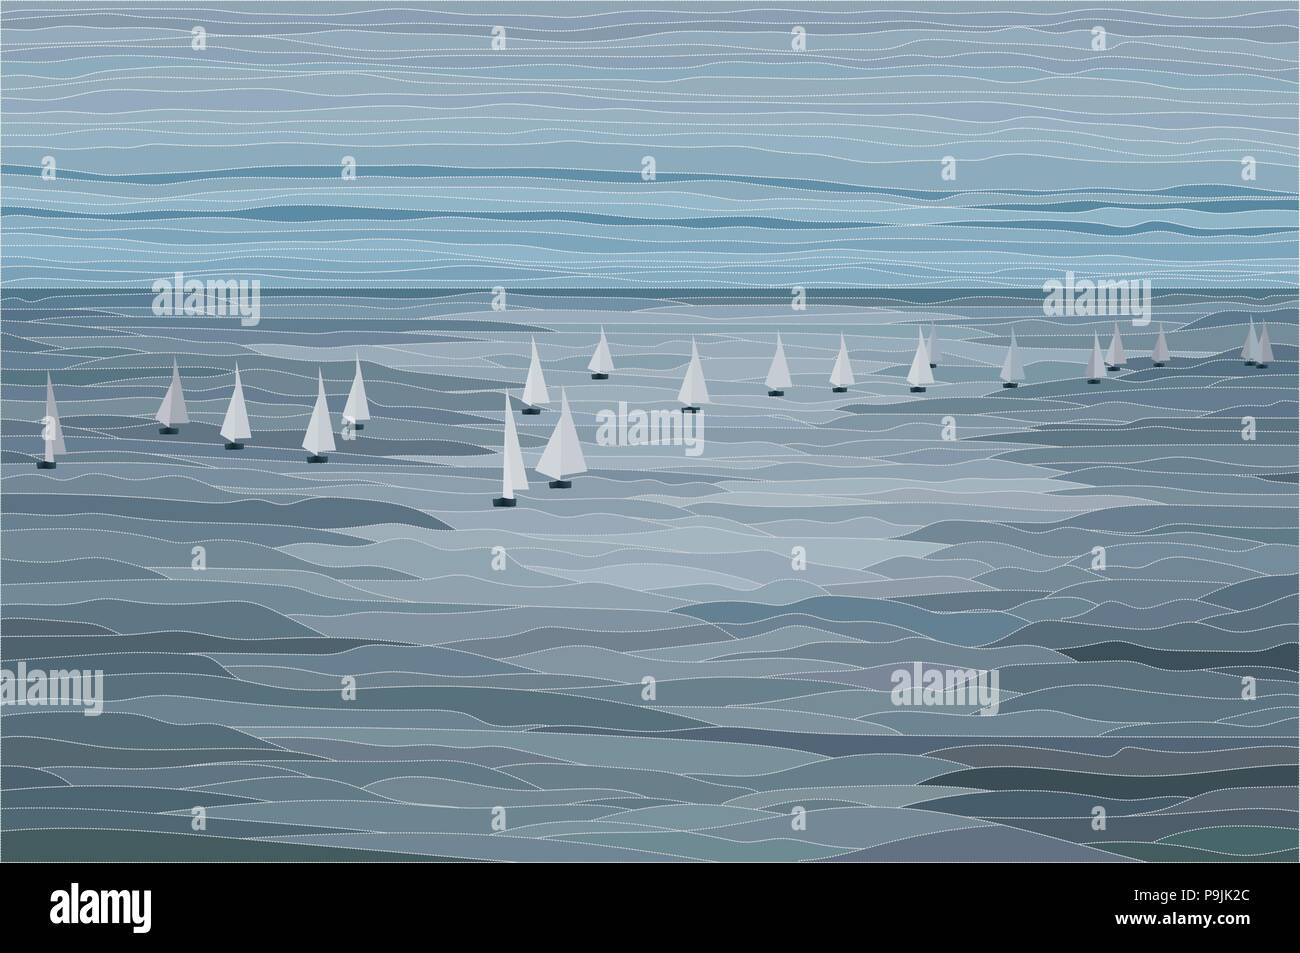 Voiliers dans la mer paysage vector illustration Illustration de Vecteur